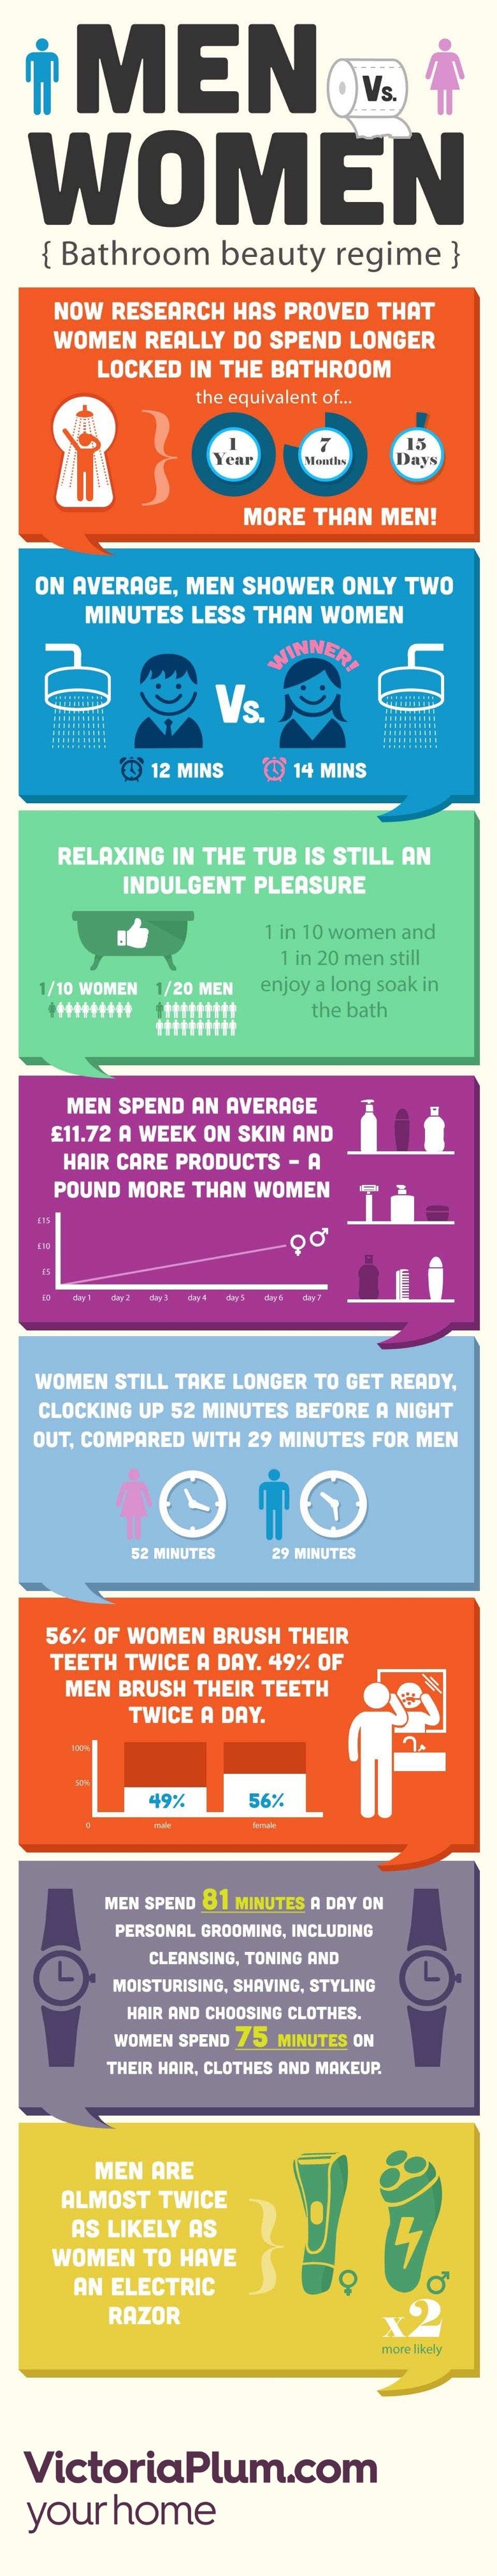 Men vs Women in the Bathroom Infographic